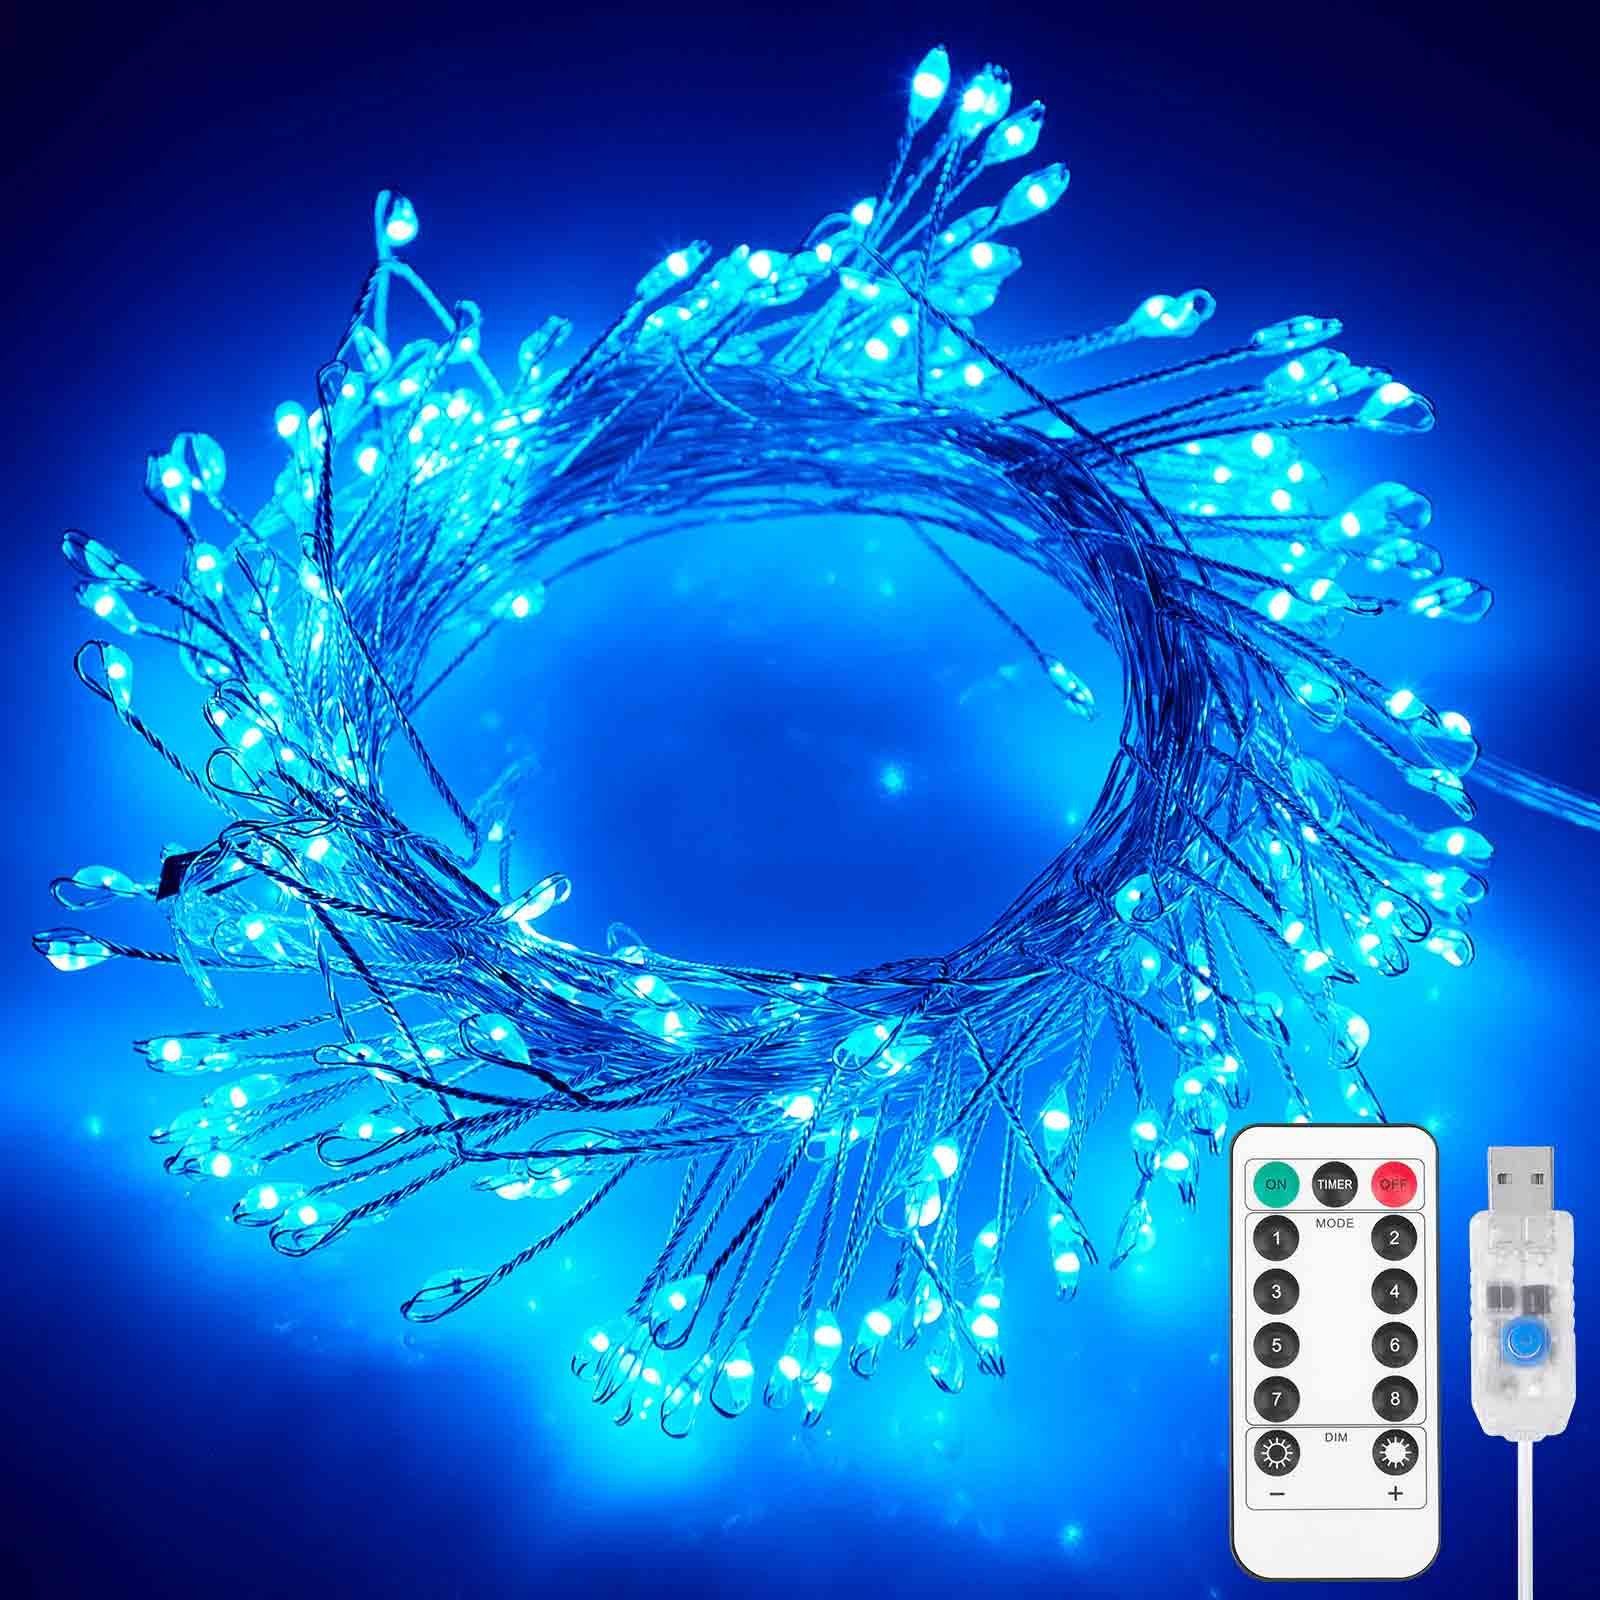 【Klassisch】 Rosnek LED-Lichterkette 3M/6M, Blau Timer, Deko Party, dimmbar, Garten Hochzeit Fest Weihnachten für Fernbedienung, wasserdicht, USB